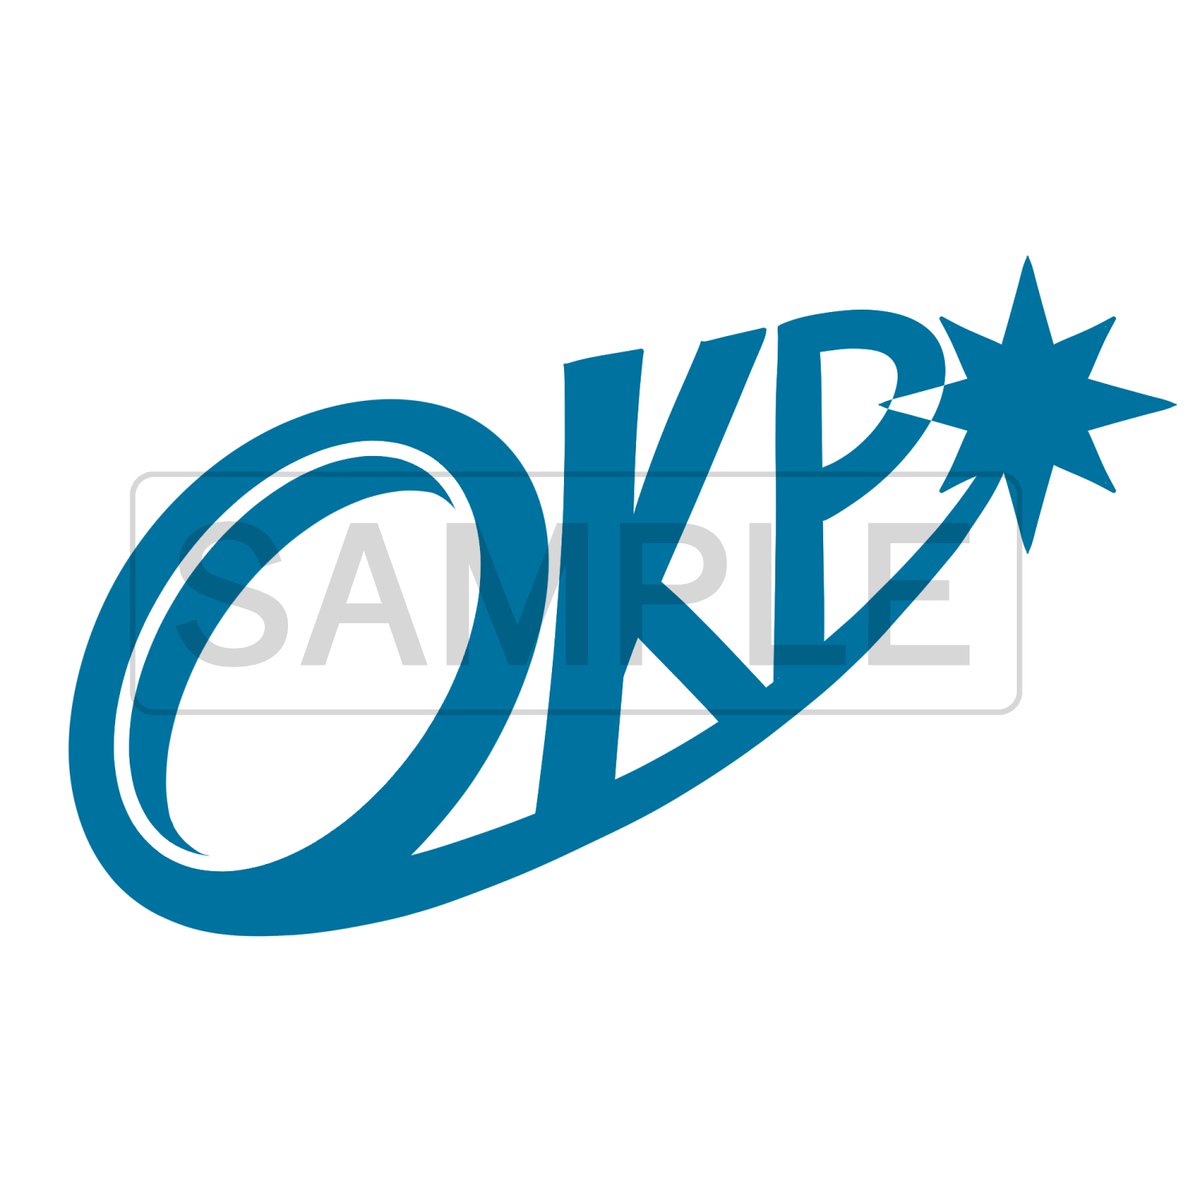 「【お知らせ】このたび、合同会社OKP様のロゴコンペで採用とのご連絡を頂きました!」|くろやぎ🎨のイラスト